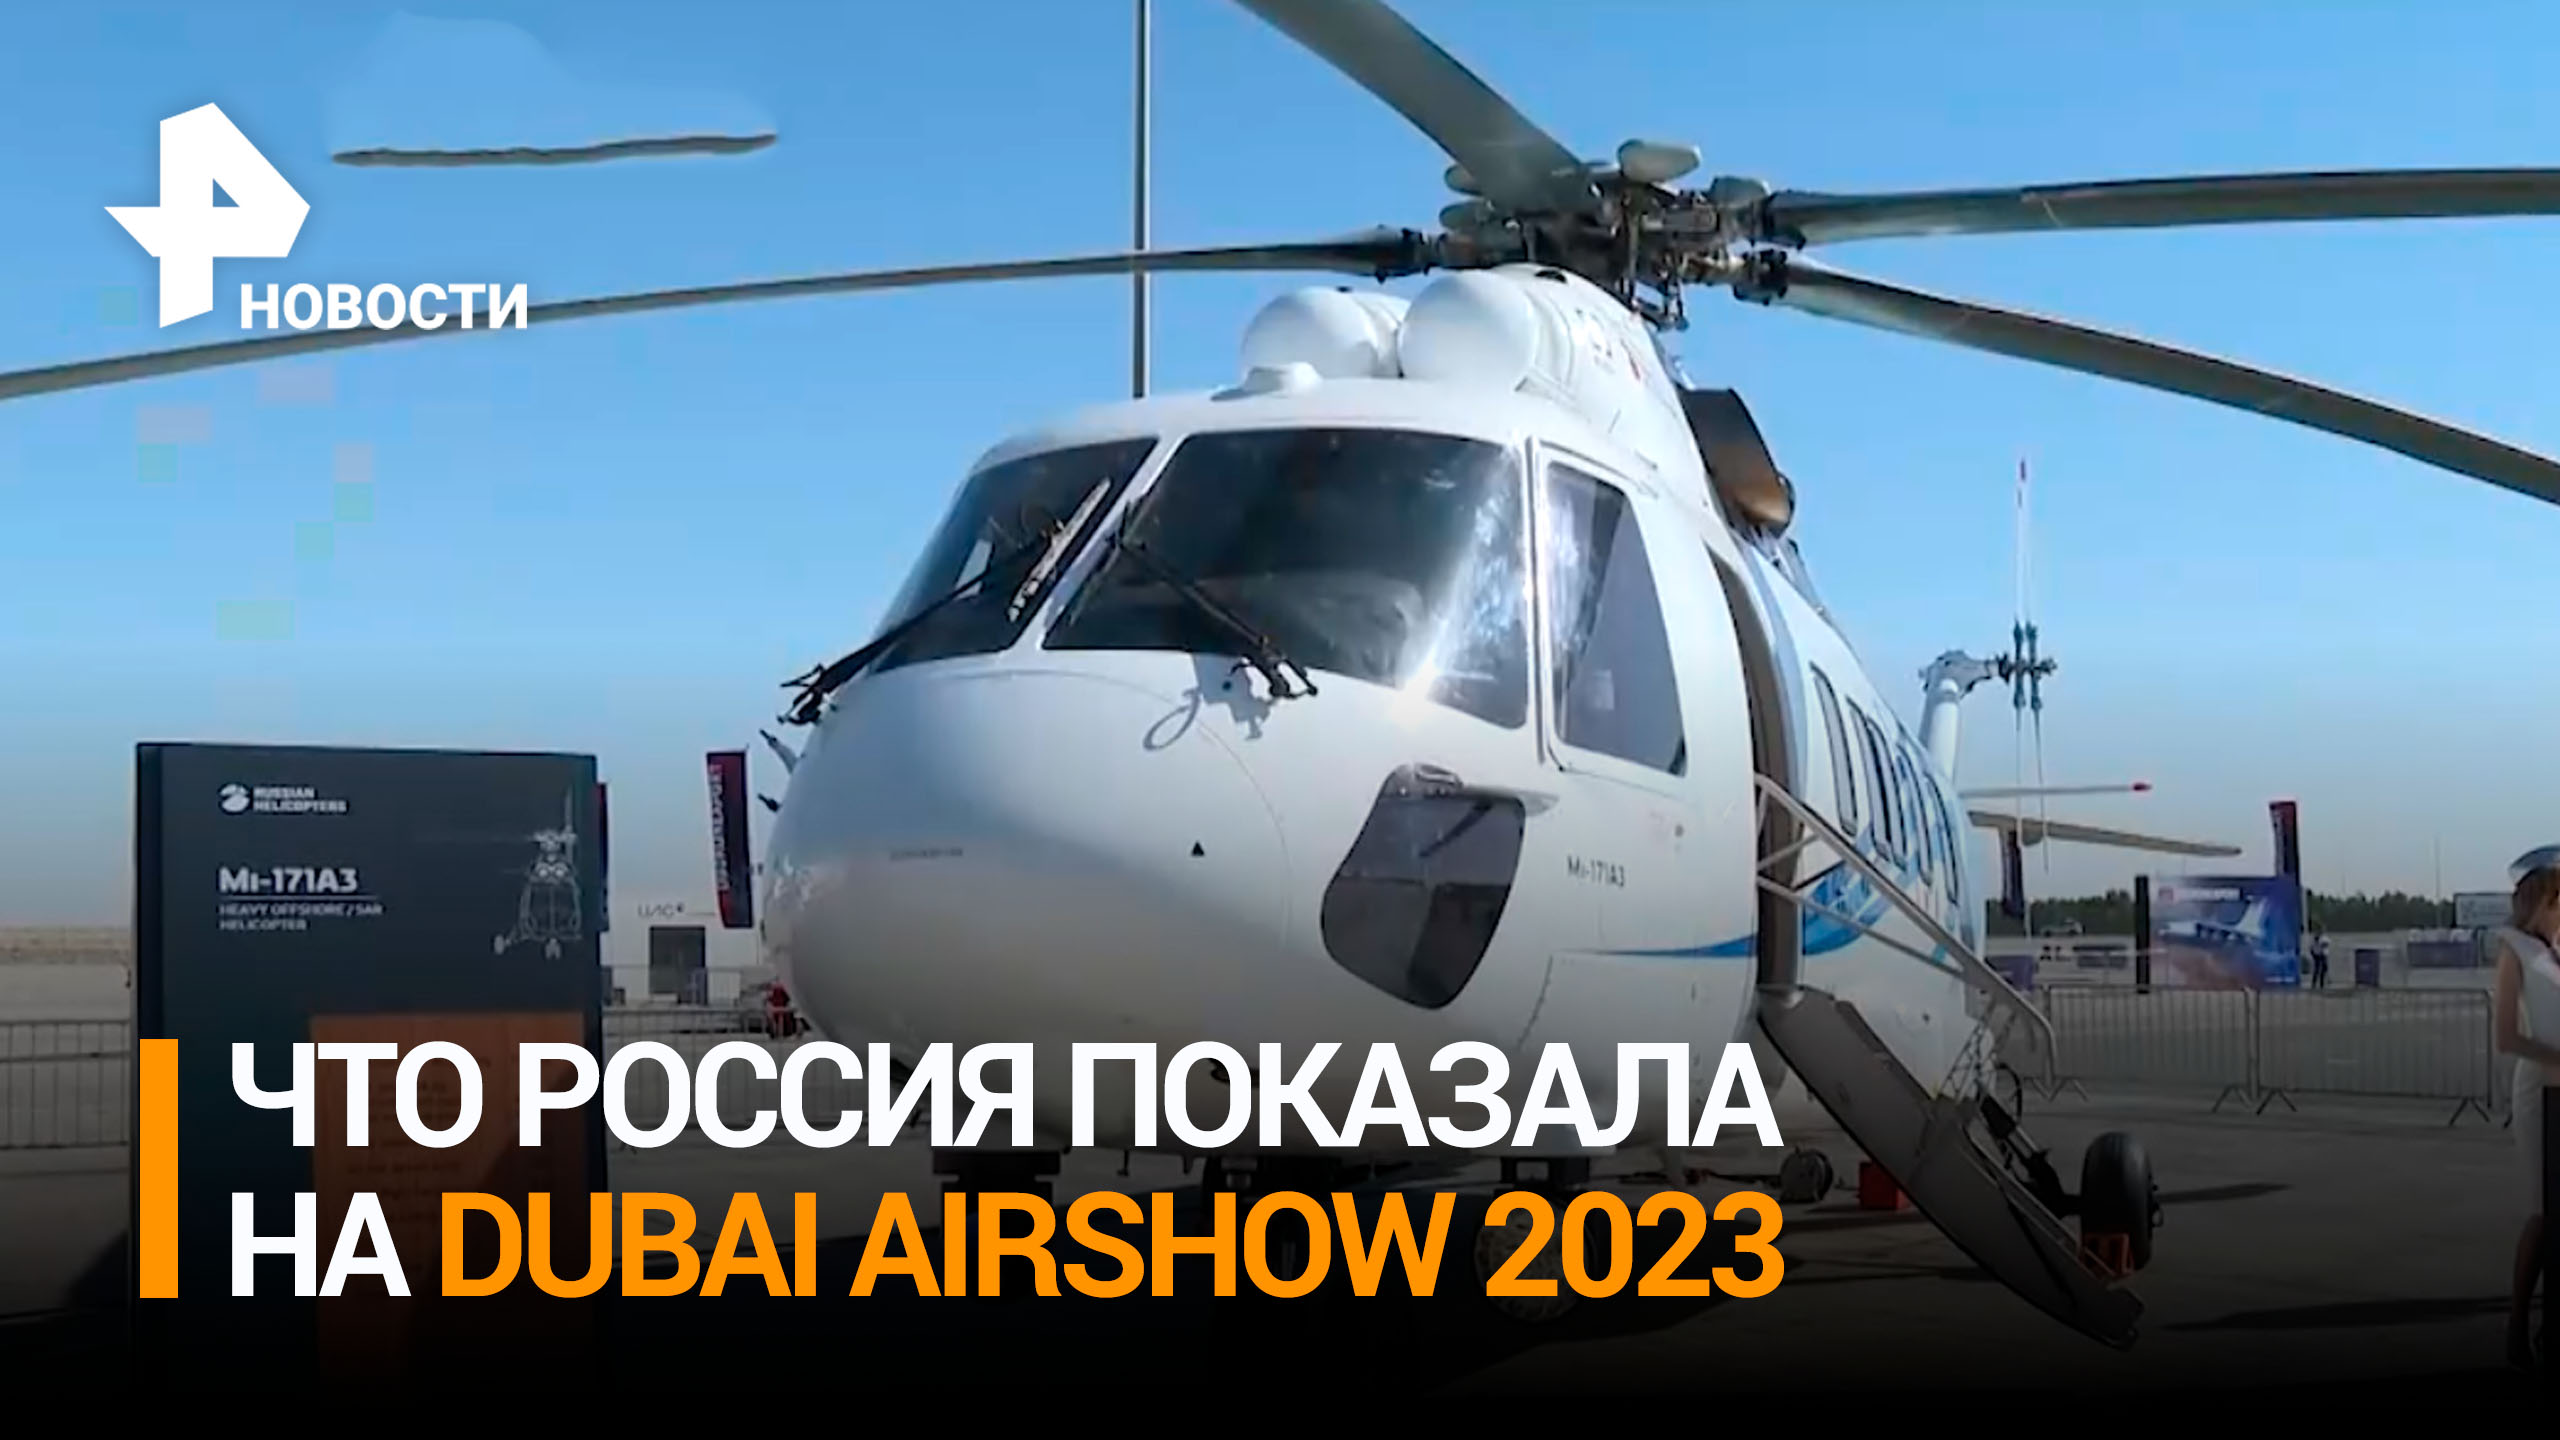 Будущее авиастроения и космонавтики: что Россия показала на Dubai Airshow 2023 / РЕН Новости